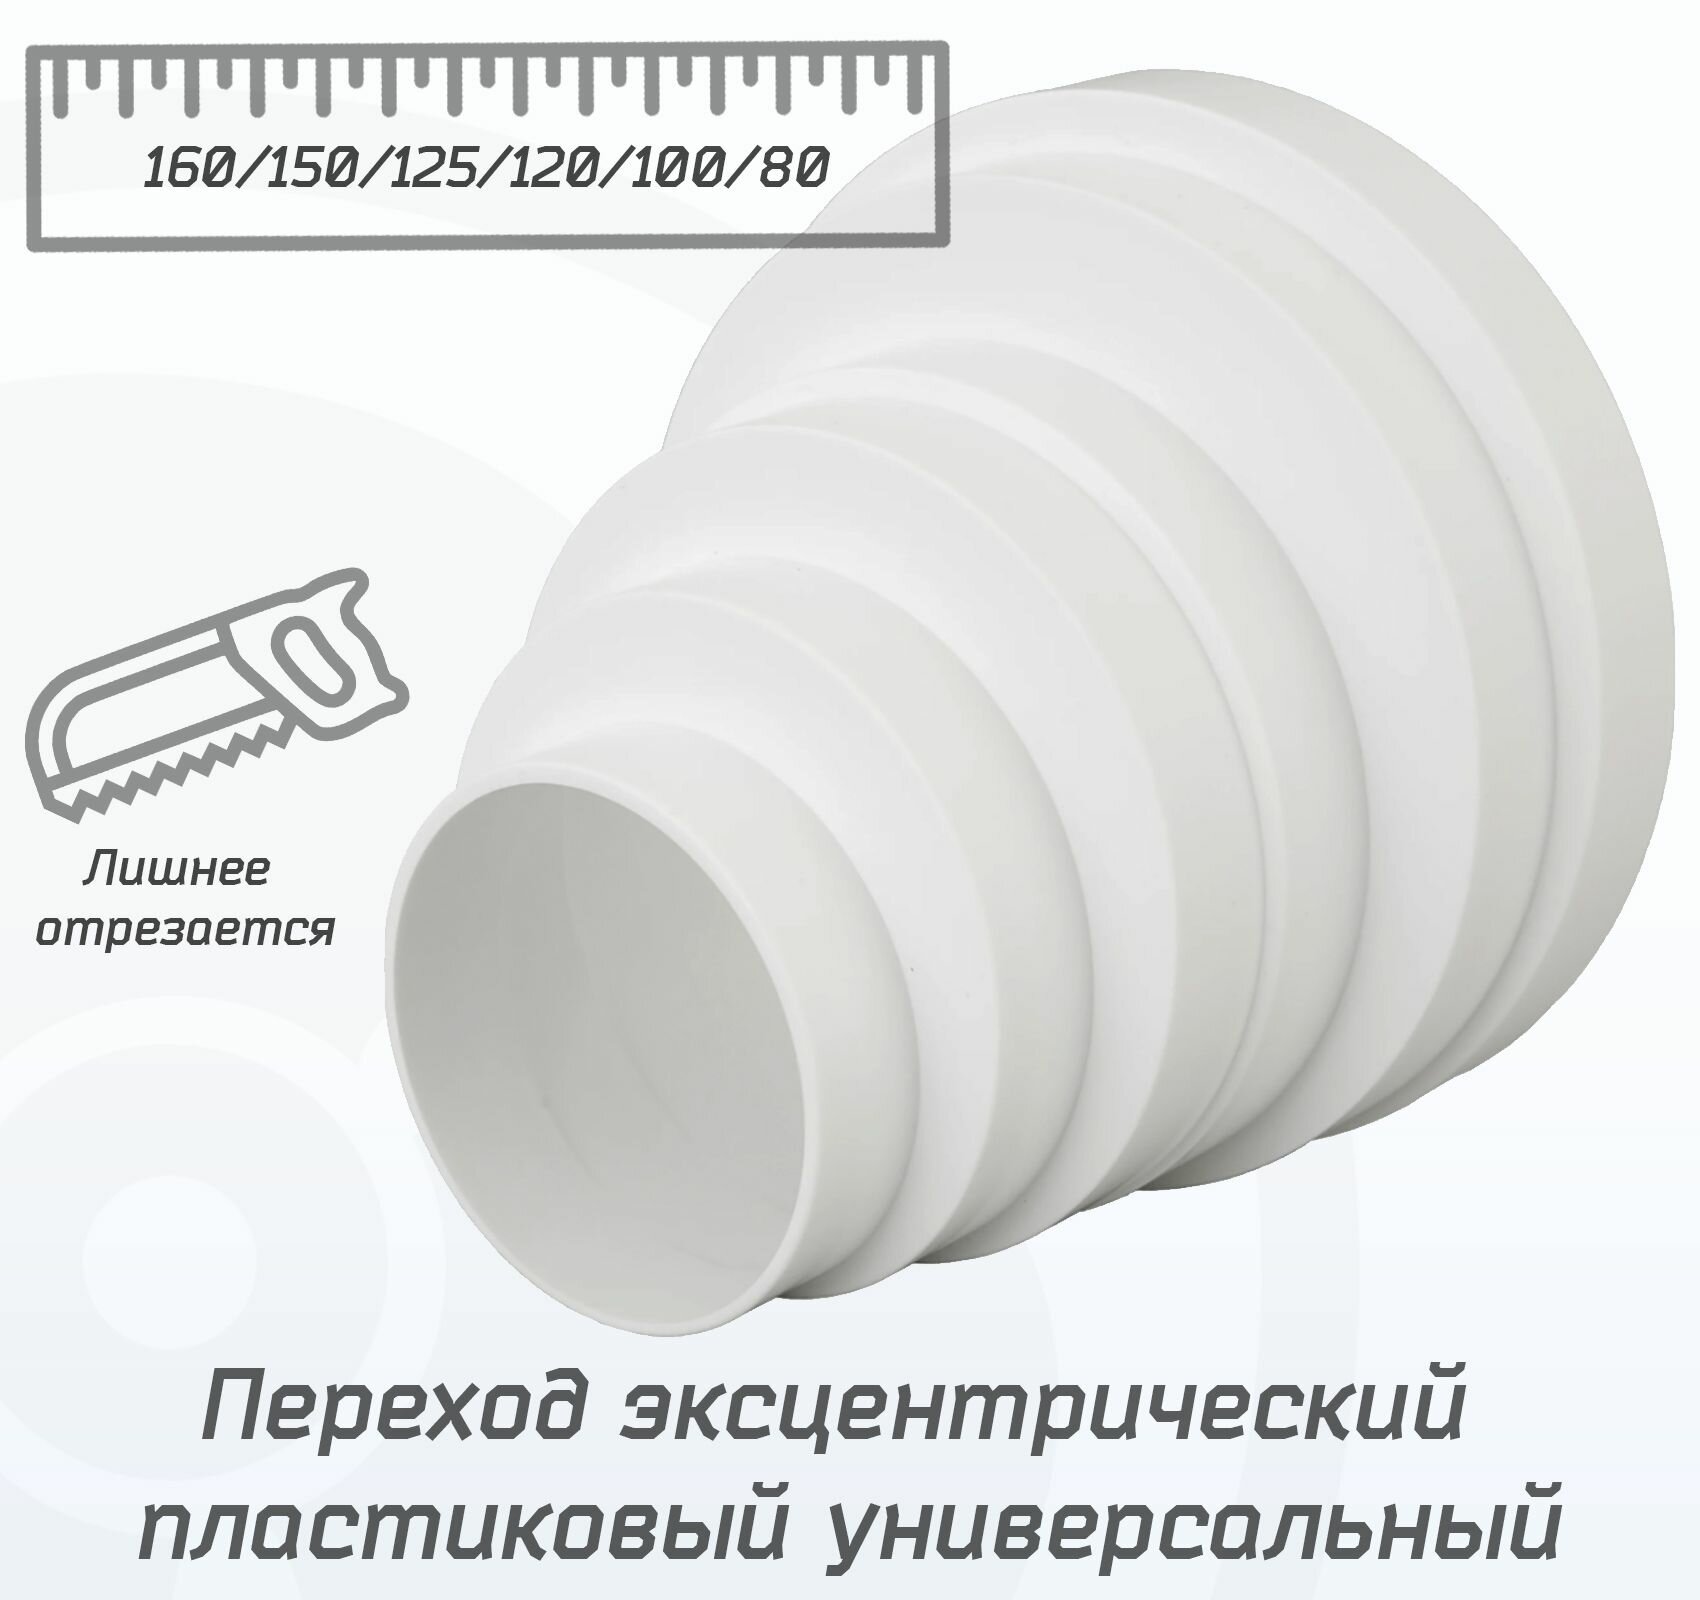 Переход эксцентрический пластиковый универсальный 80/100/120/150/160 мм, белый редуктор 80-160 мм из ABS пластика